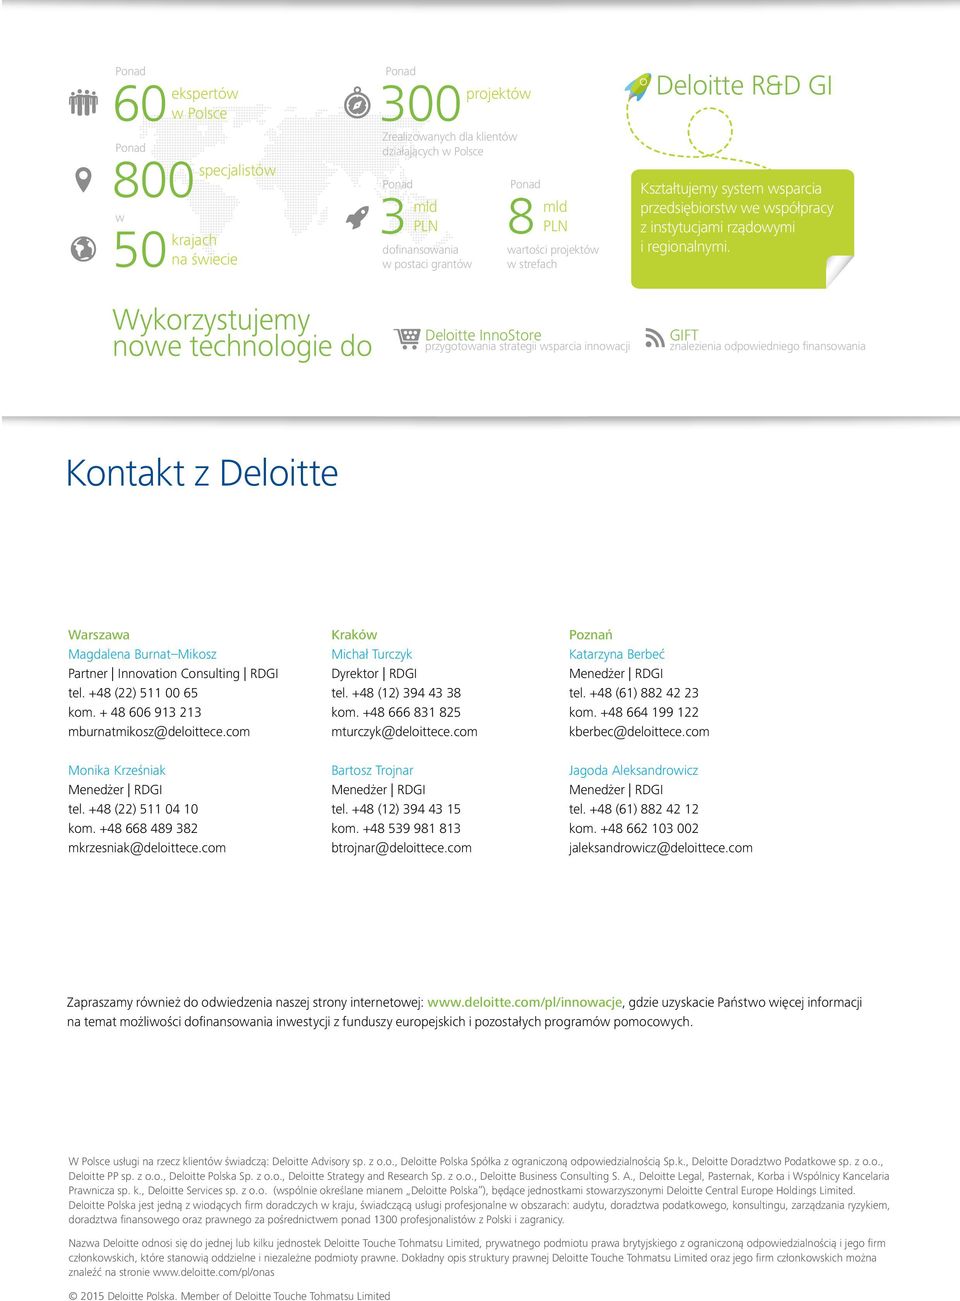 rządowymi i regionalnymi. GIFT znalezienia odpowiedniego finansowania Kontakt z Deloitte Warszawa Magdalena Burnat Mikosz Partner Innovation Consulting RDGI tel. +48 (22) 511 00 65 kom.